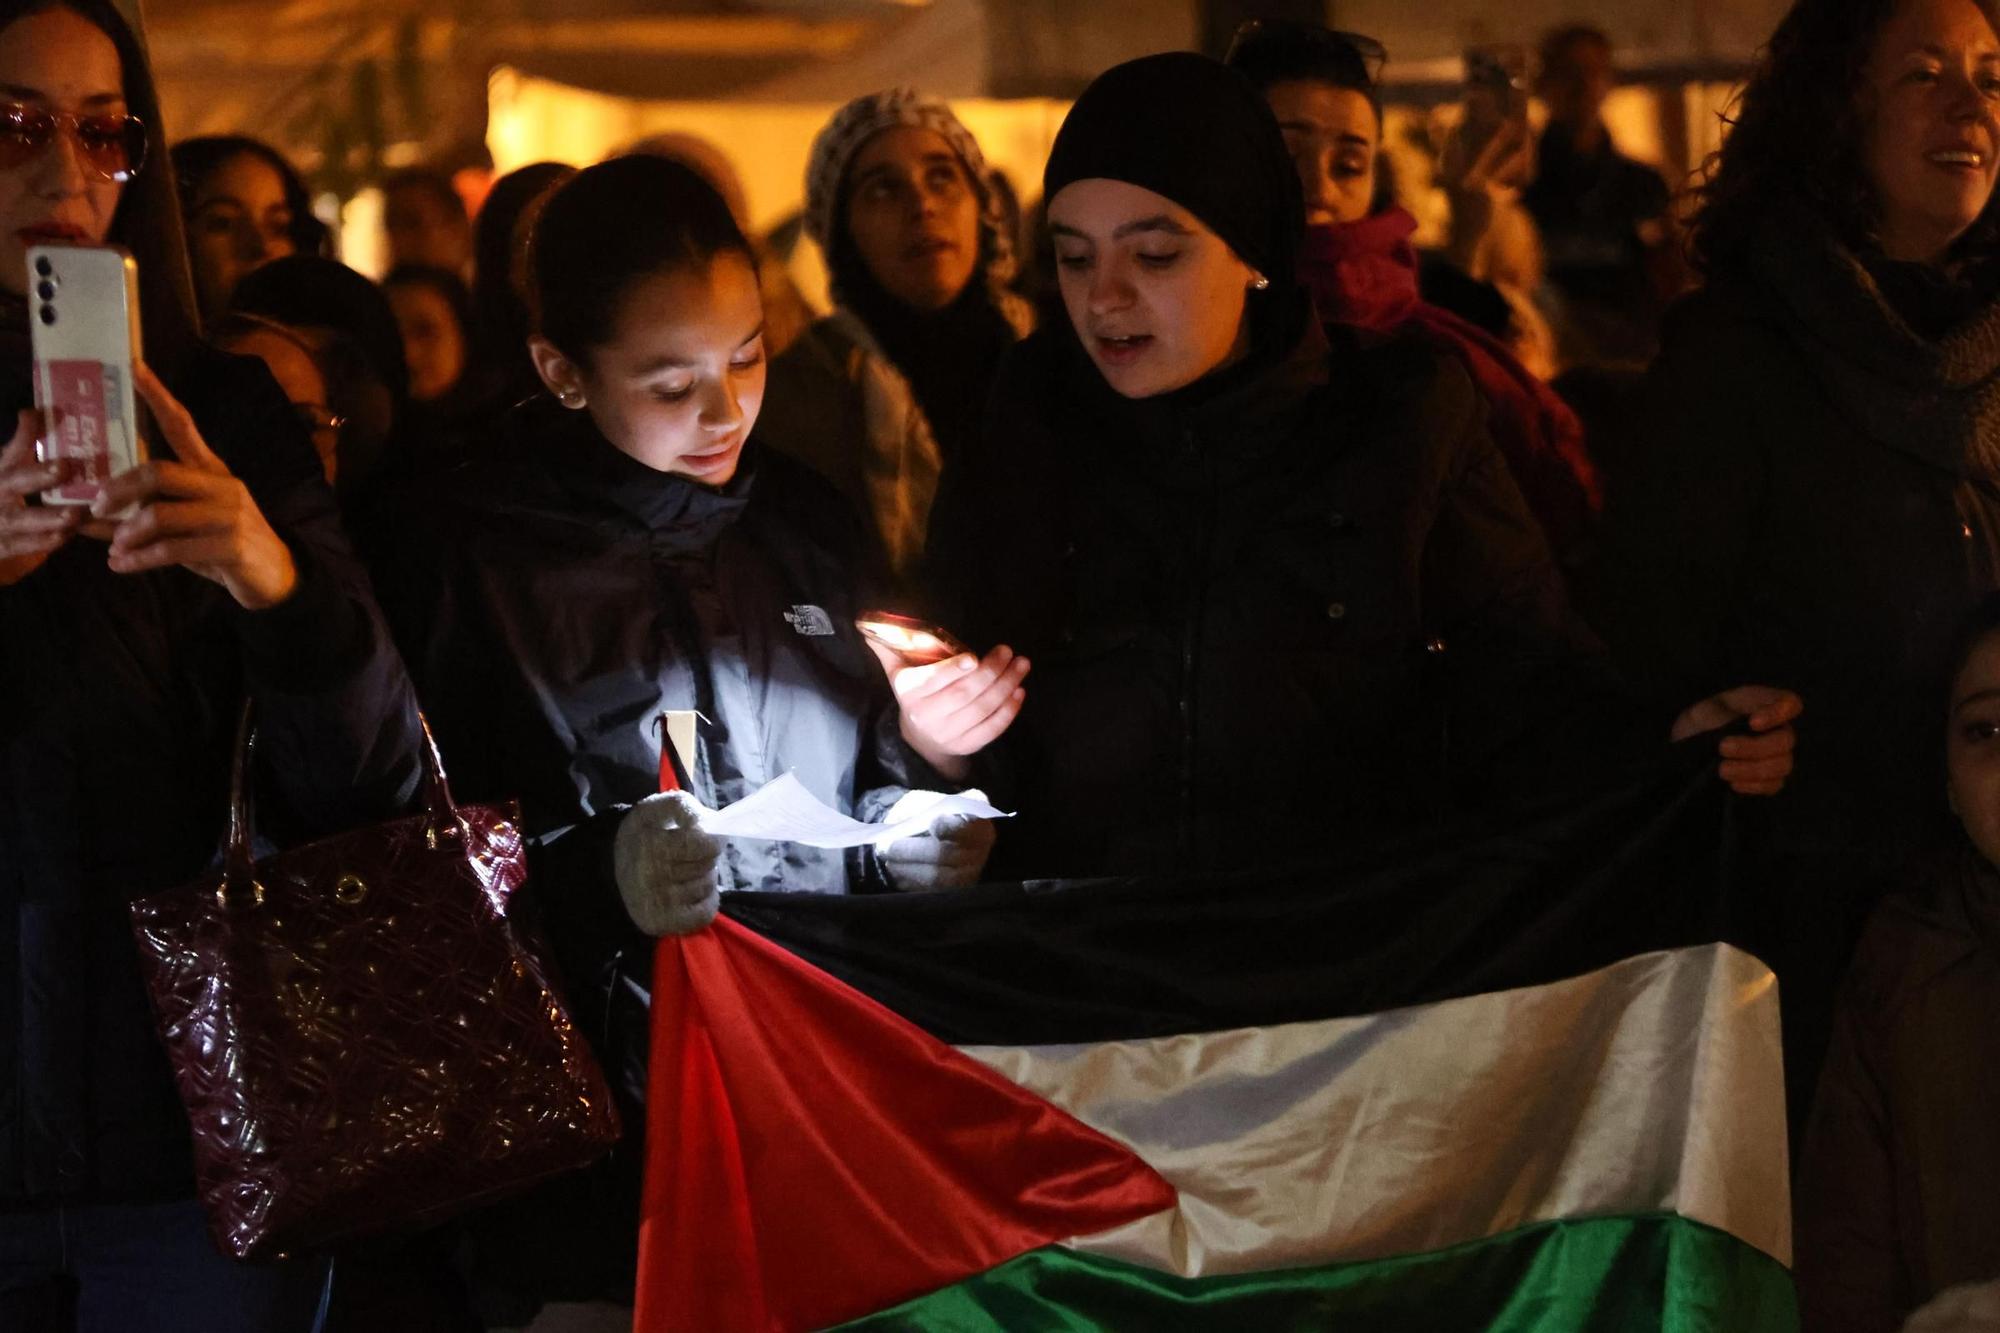 Galería: Manifestación por Palestina